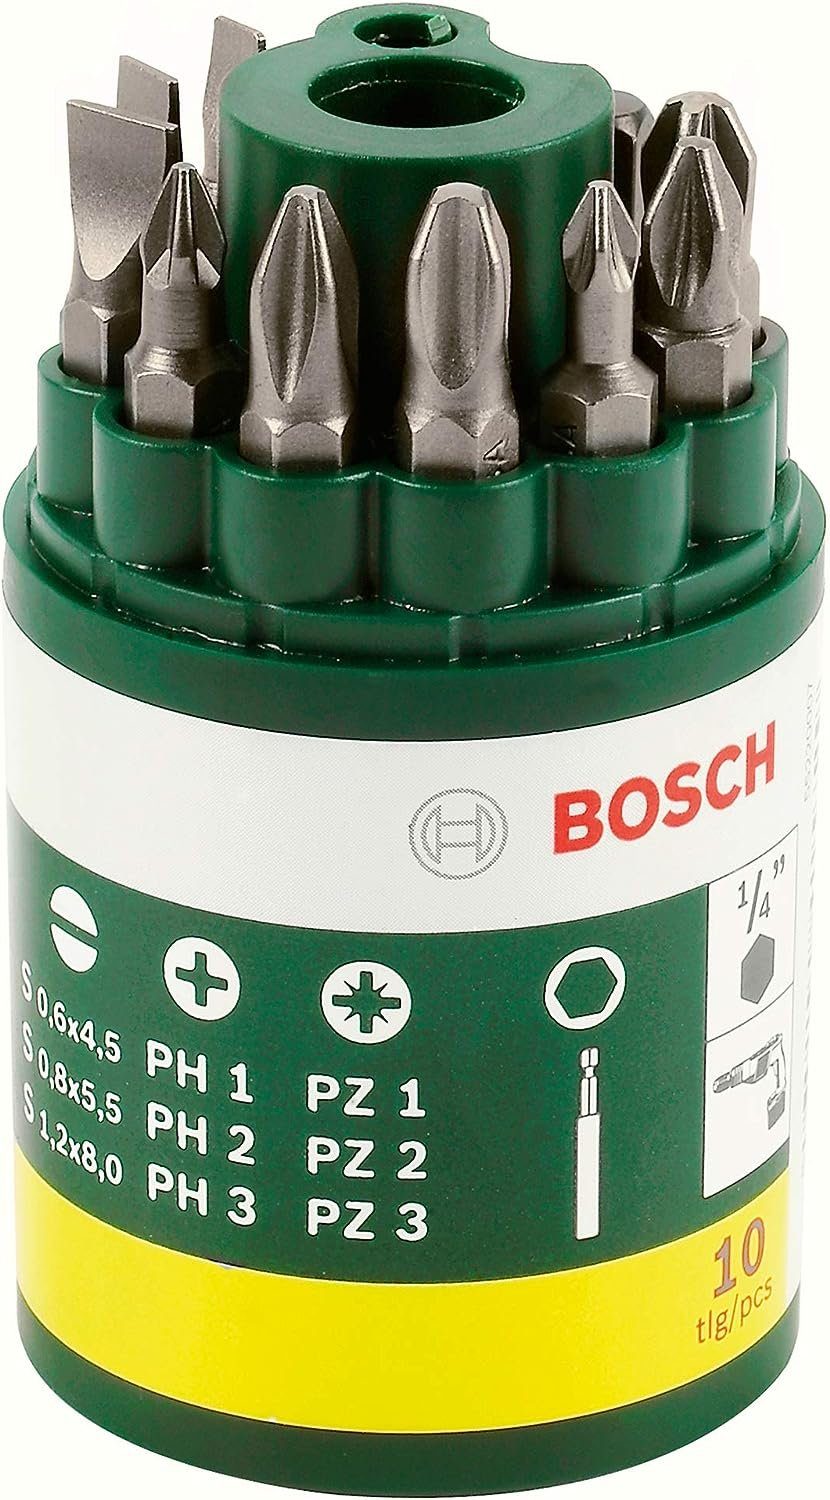 BOSCH Bohrer- und Bitset Bosch 10 tlg. Bit Schrauberbit-Set